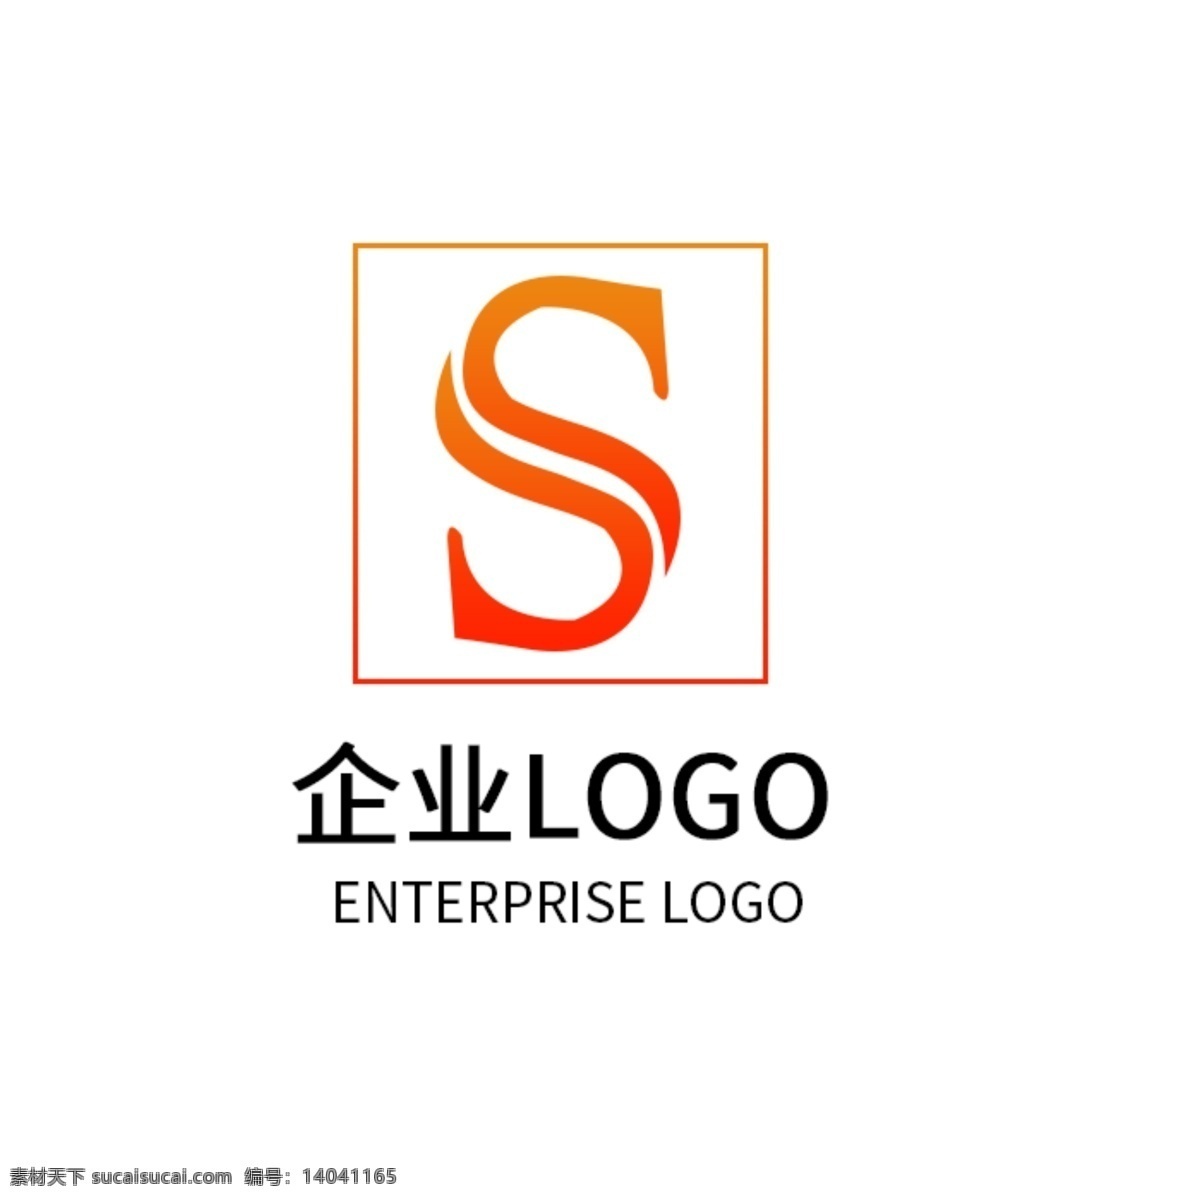 字母 s 公司 logo 企业 标志设计 字母s 企业标志 橙色渐变 top排名 美容健身 标志